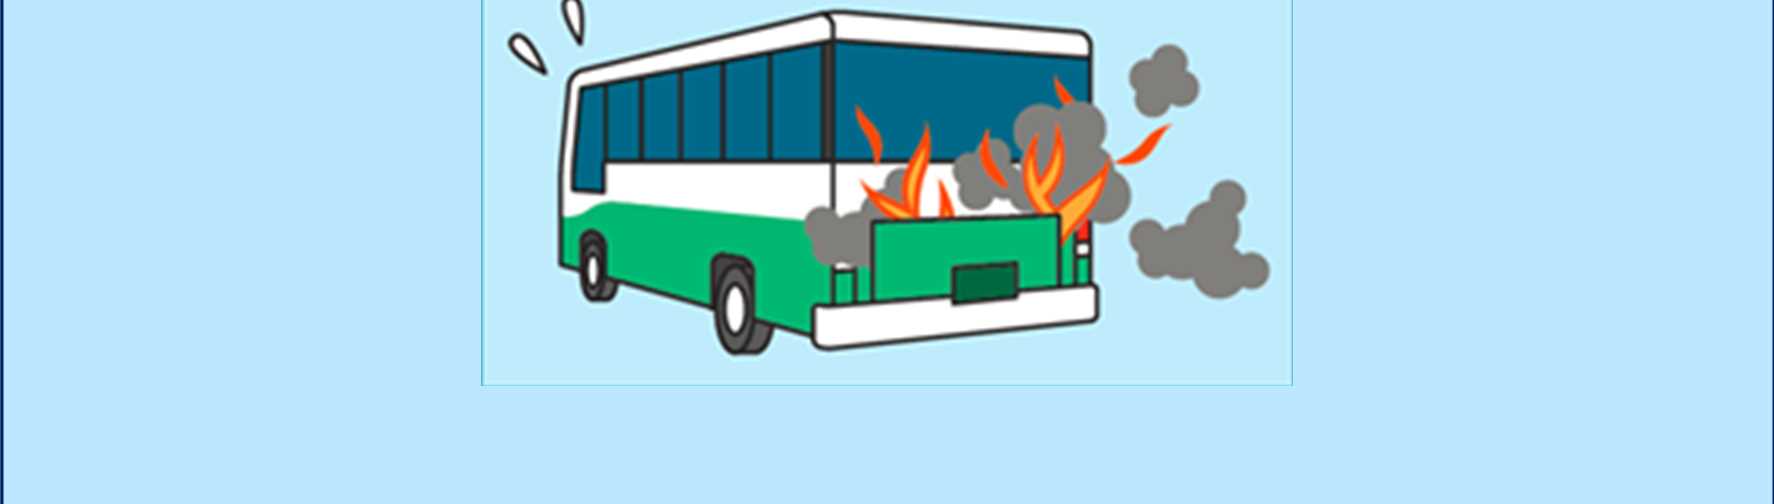 別 添 1 バス 火 災 事 故 防 止 のための 点 検 整 備 のポイント 国 土 交